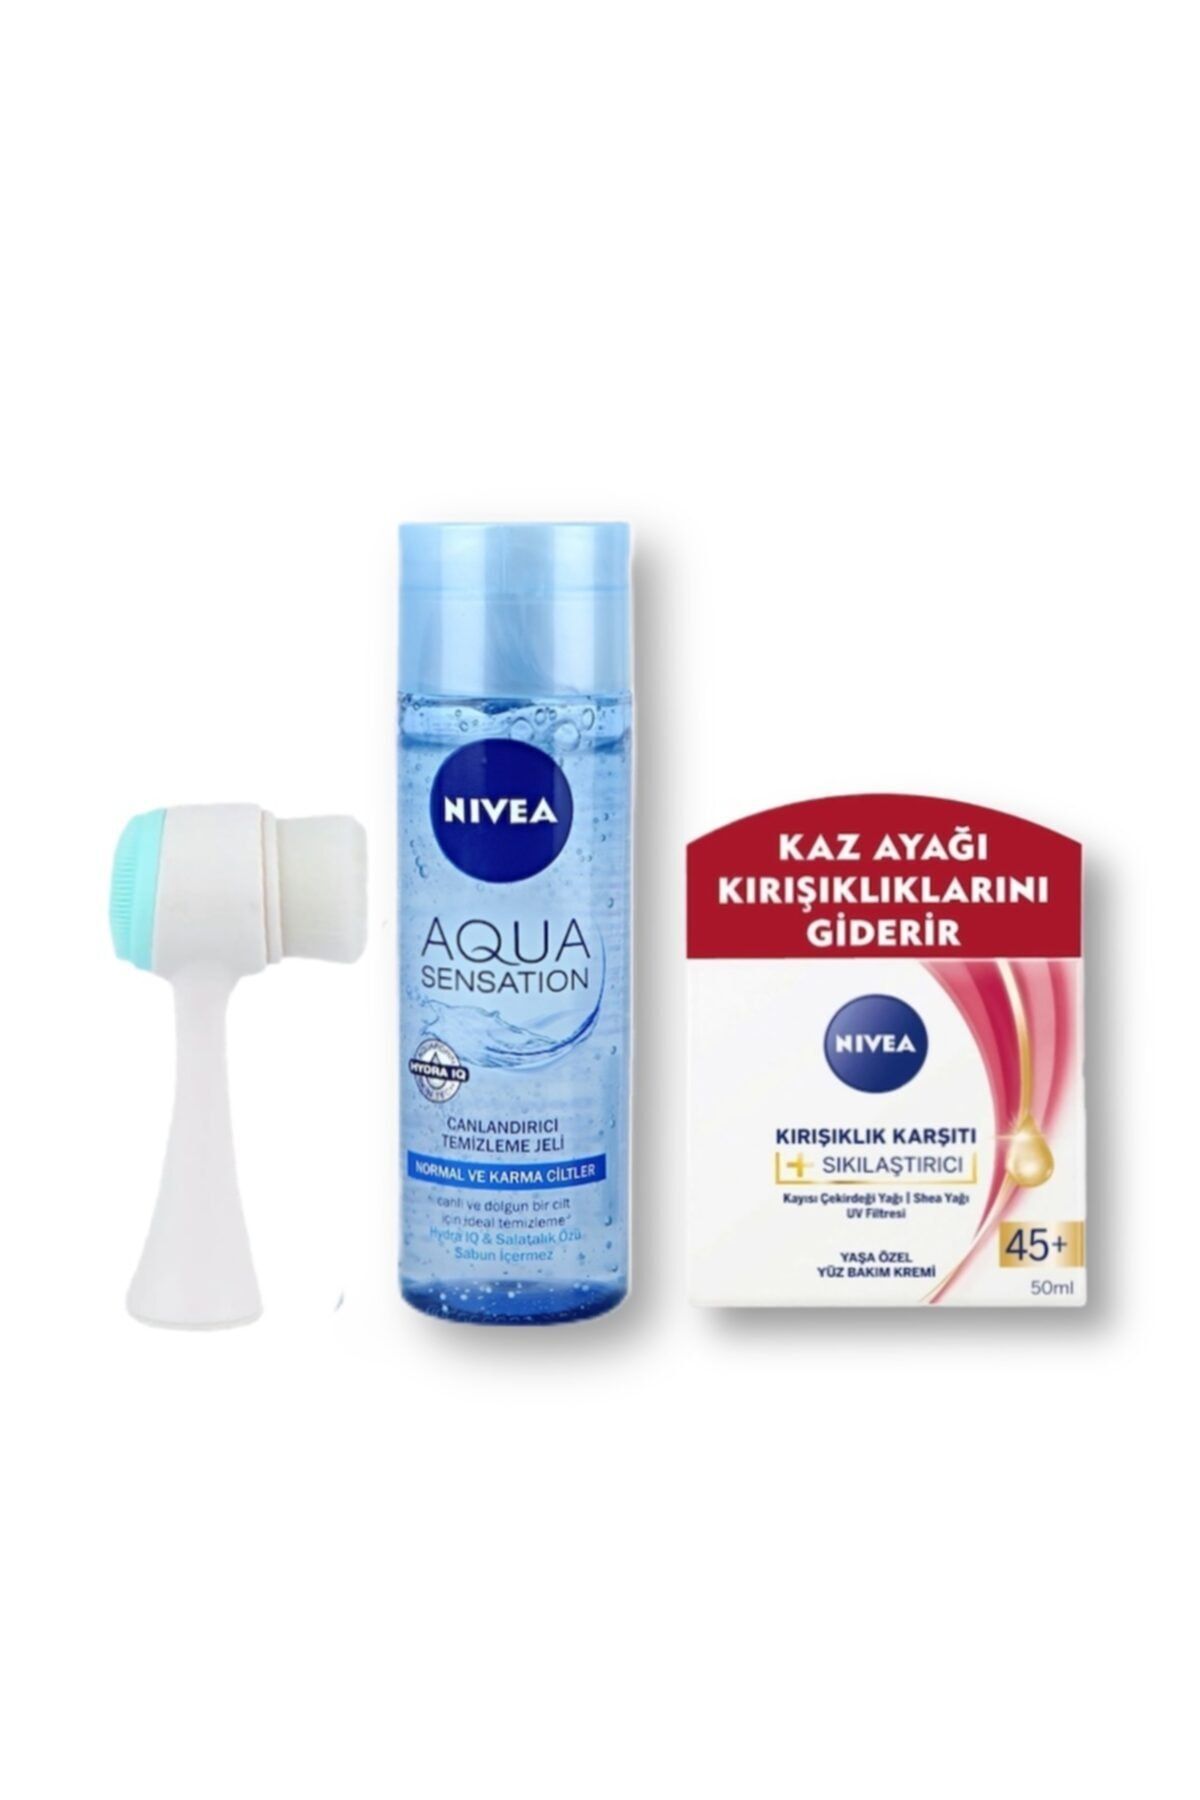 NIVEA Aqua Sensation Yüz Temizleme Jeli +kırışıklık Karşıtı 45+ Yüz Bakım Kremi + Yüz Temizleme Fırçası